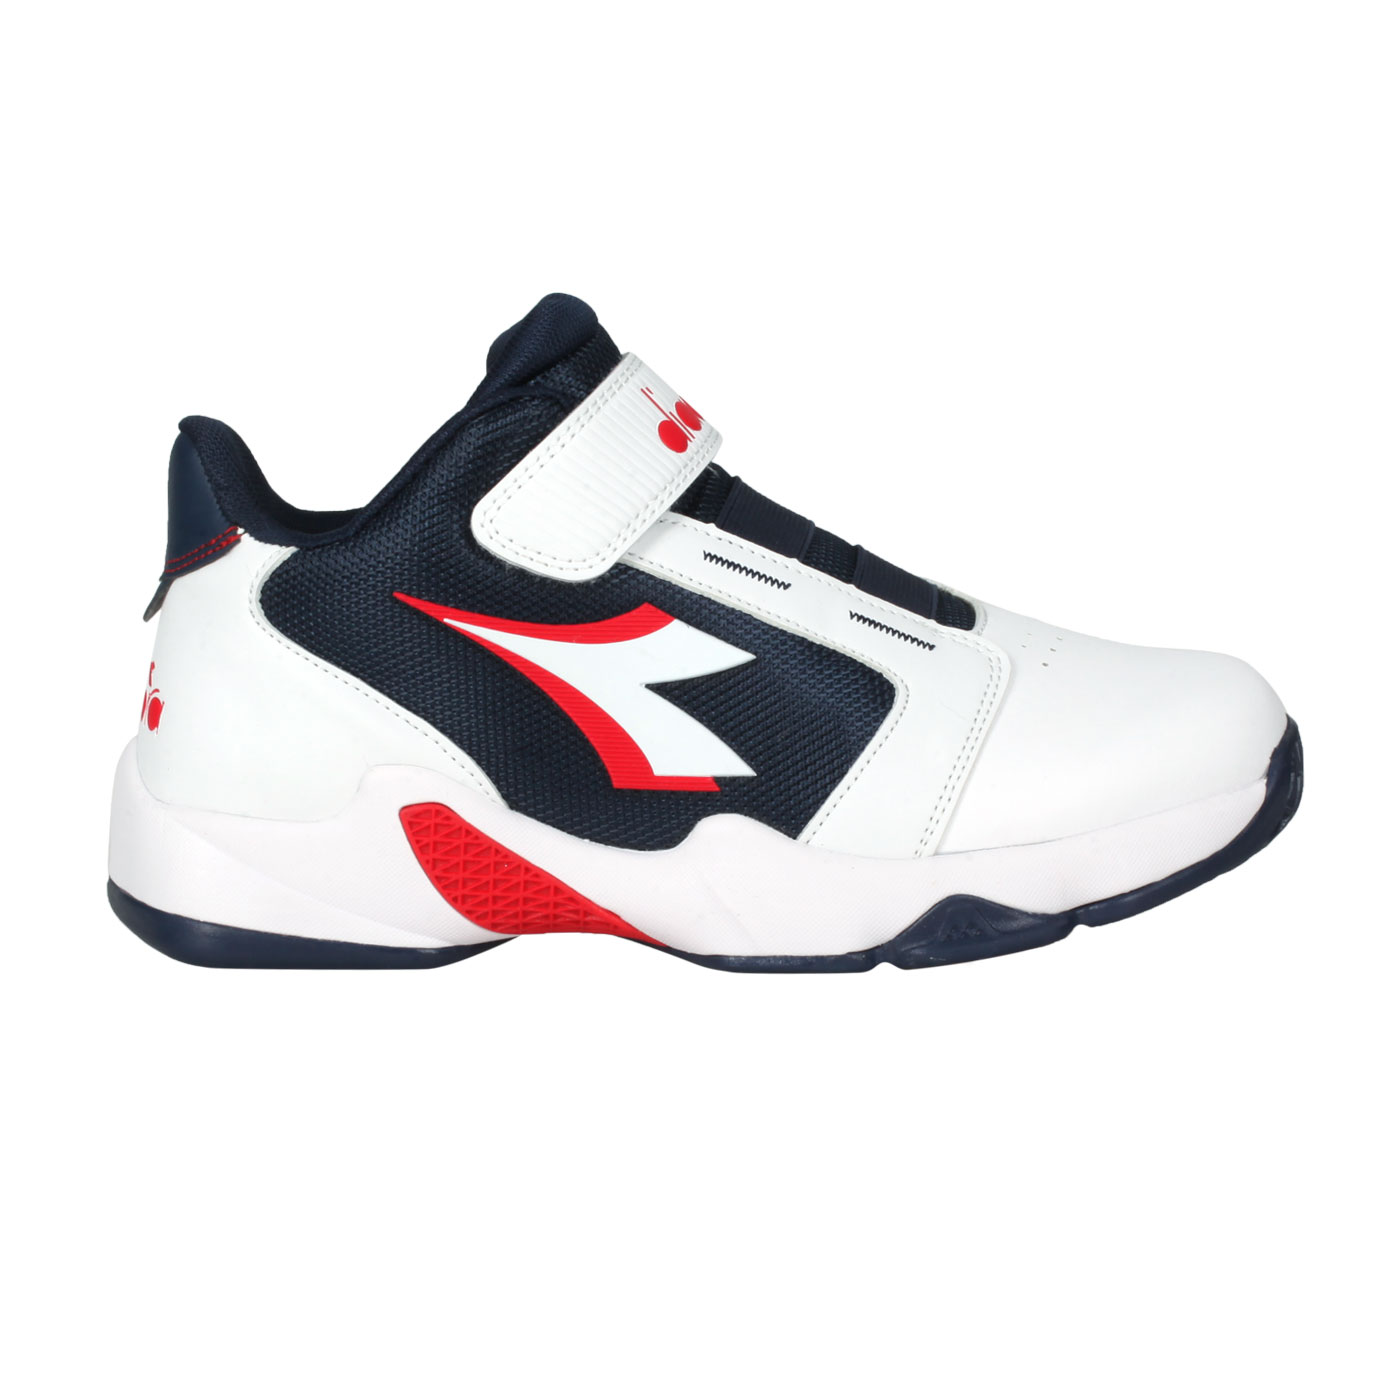 DIADORA 大童專業籃球鞋-超寬楦 DA11063 - 白丈青紅